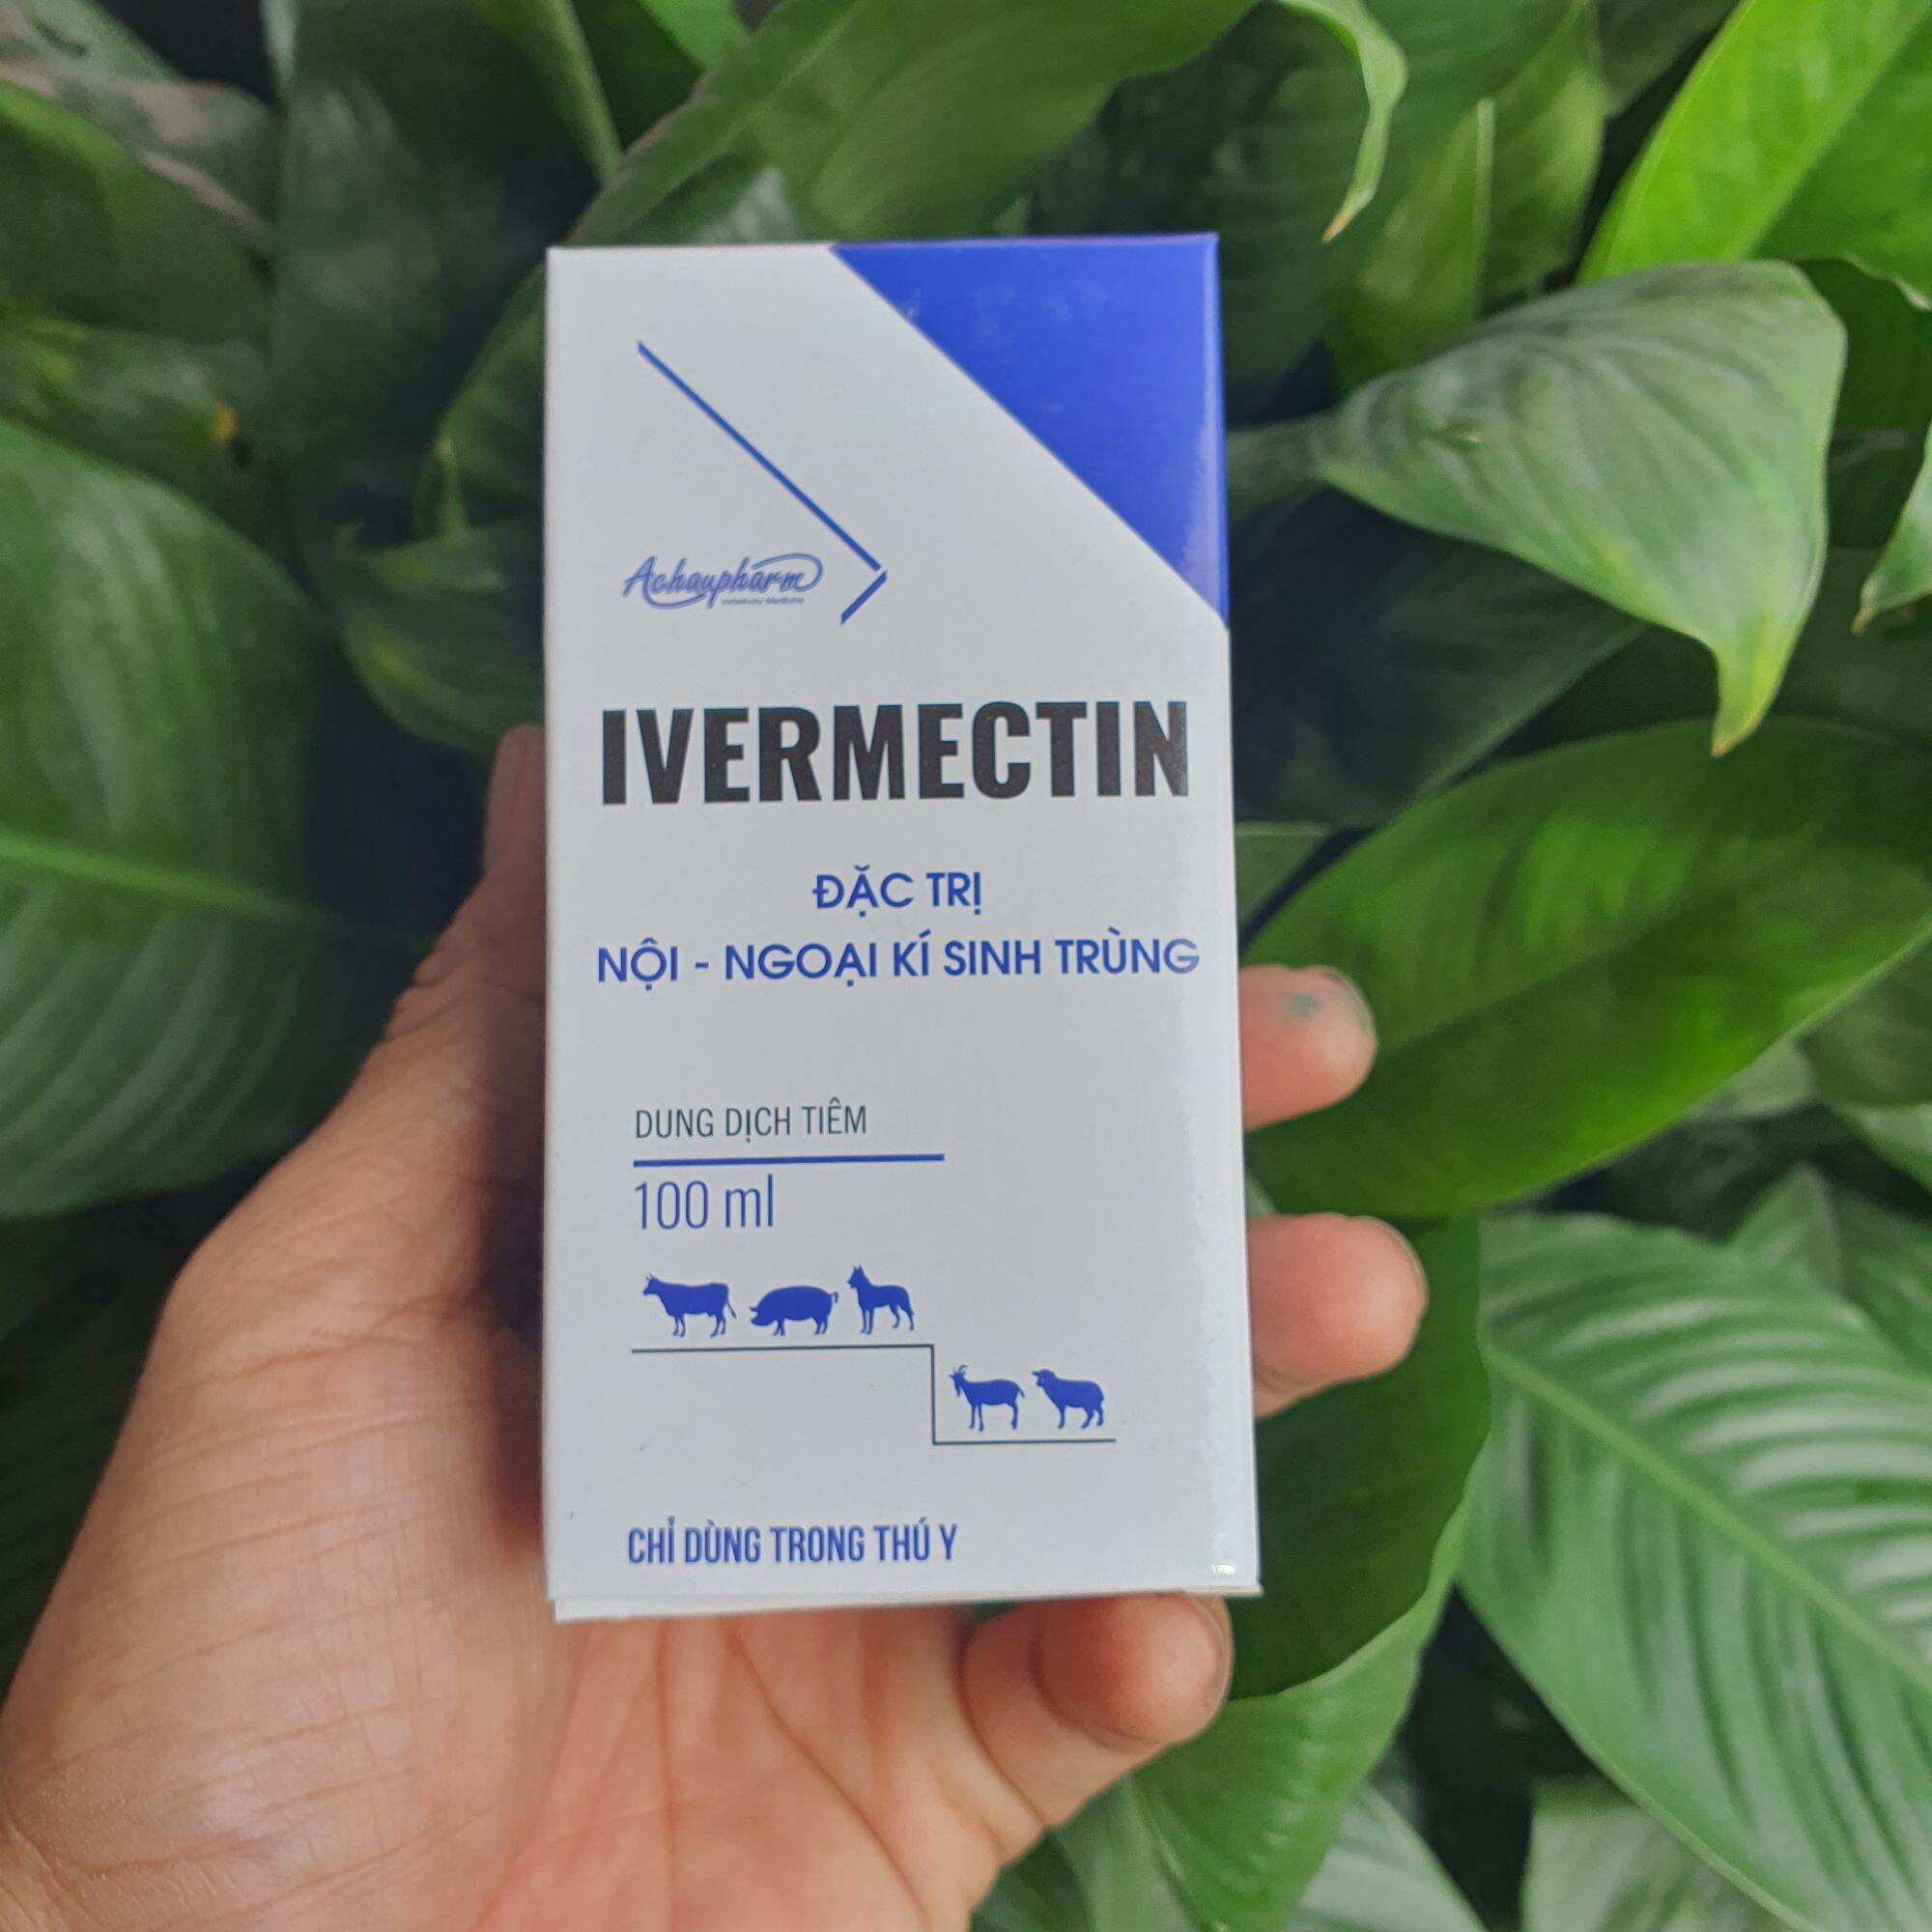 Invermectin hàm lượng cao 1%. Đặc trị nội ngoại ký sinh trùng